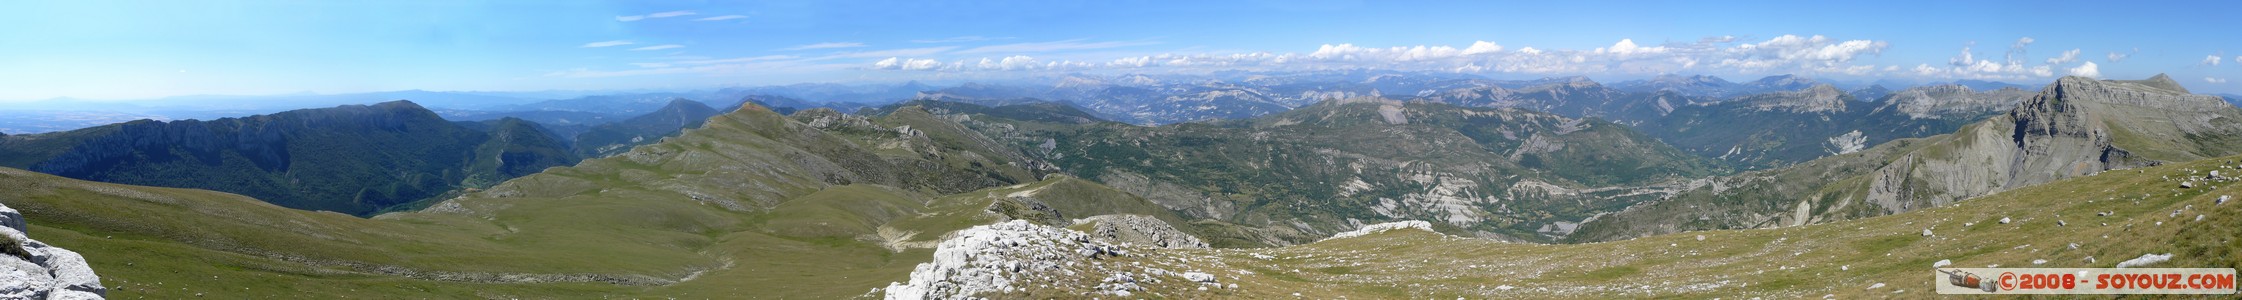 Mont Chiran - panorama
Mots-clés: panorama